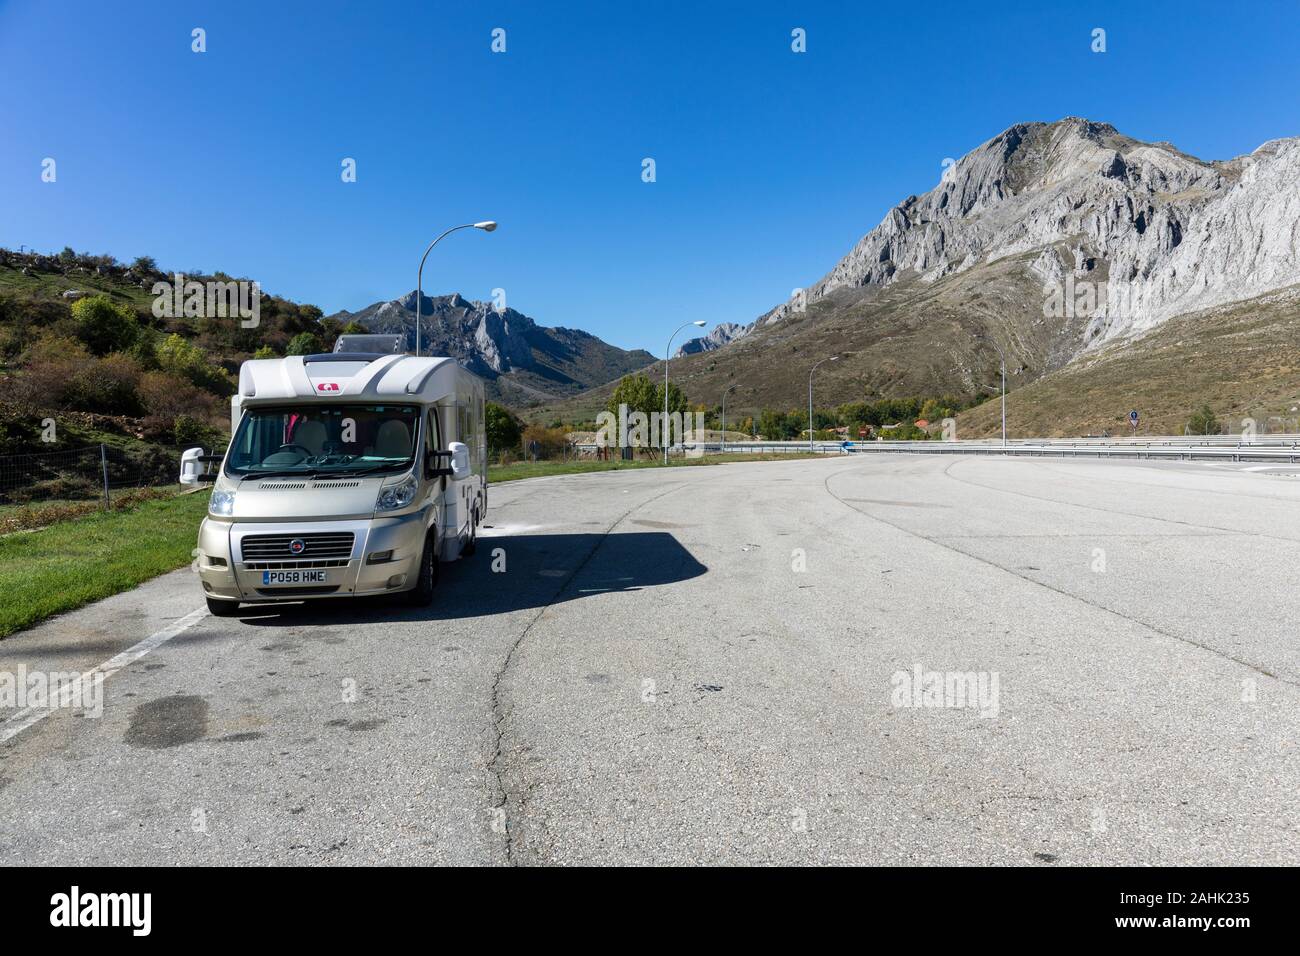 Le camping-car S'Est Arrêté dans la zone déserte de l'autoroute, Caldas de Luna, Espagne Banque D'Images